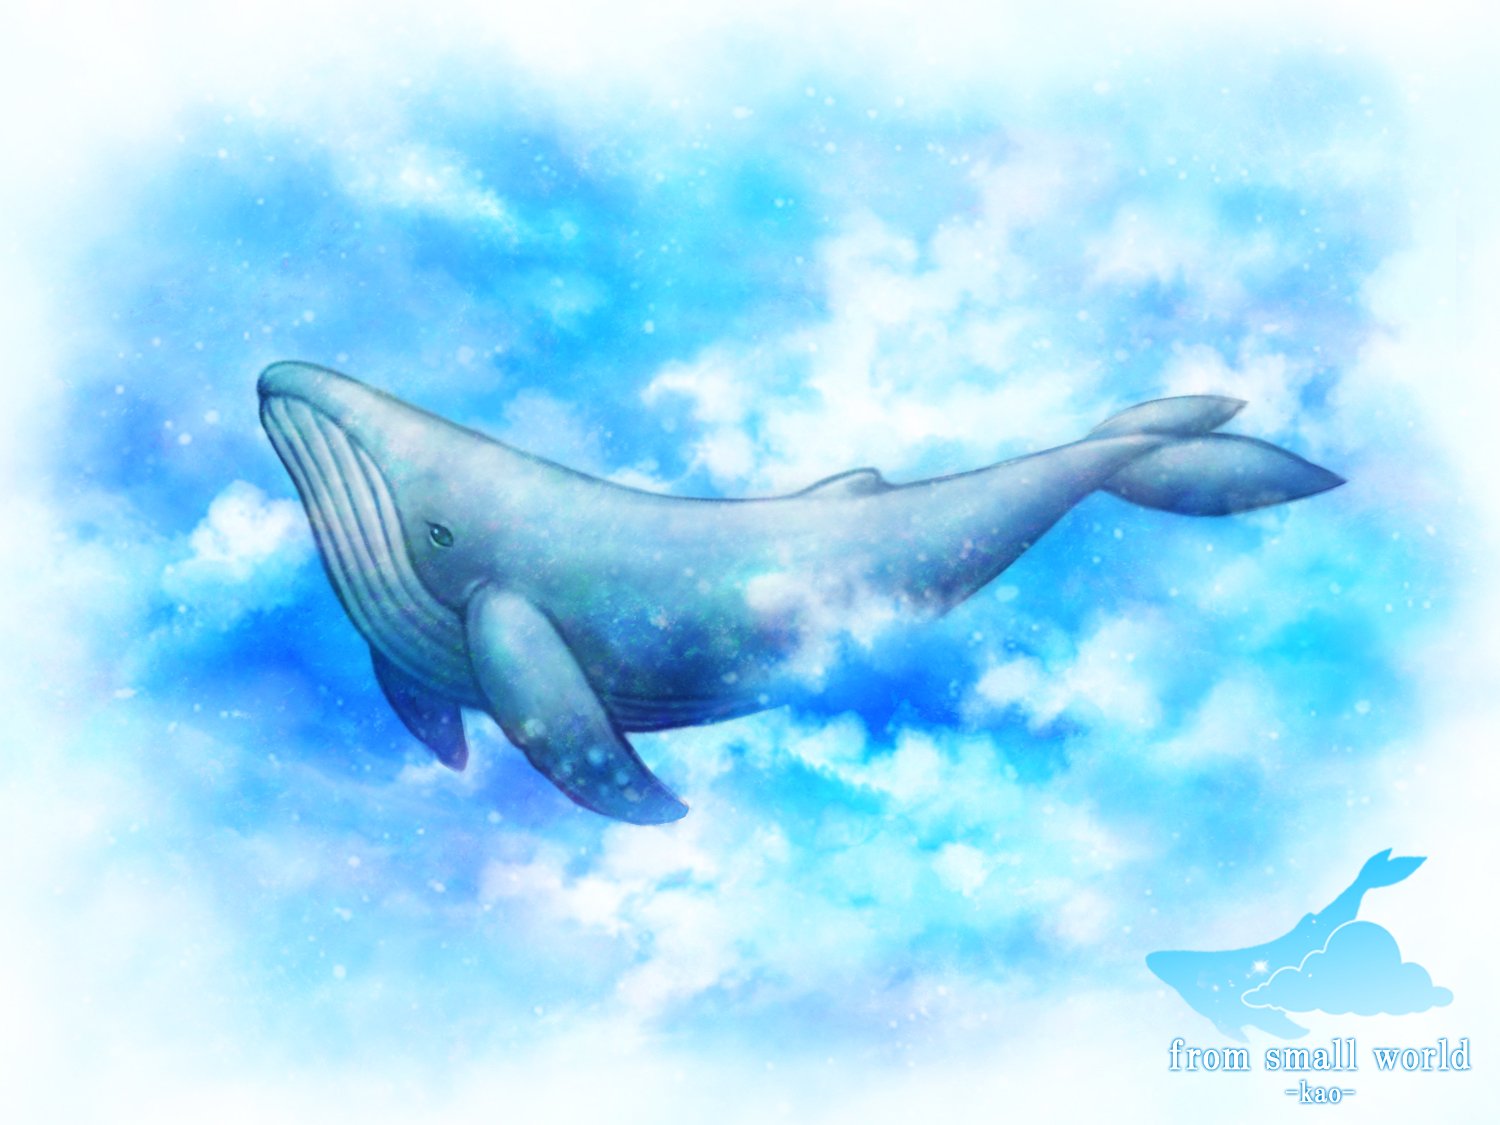 Yu Kaoさん Kaowakao に作品交換にまさかの私の絵をご所望いただき 気持ちの良い空にクジラ が泳いでいる感じ というリクエストを頂き描かせていただきました リアル系のクジラを描いていたのですが 少しやわらかく変更しました T Co